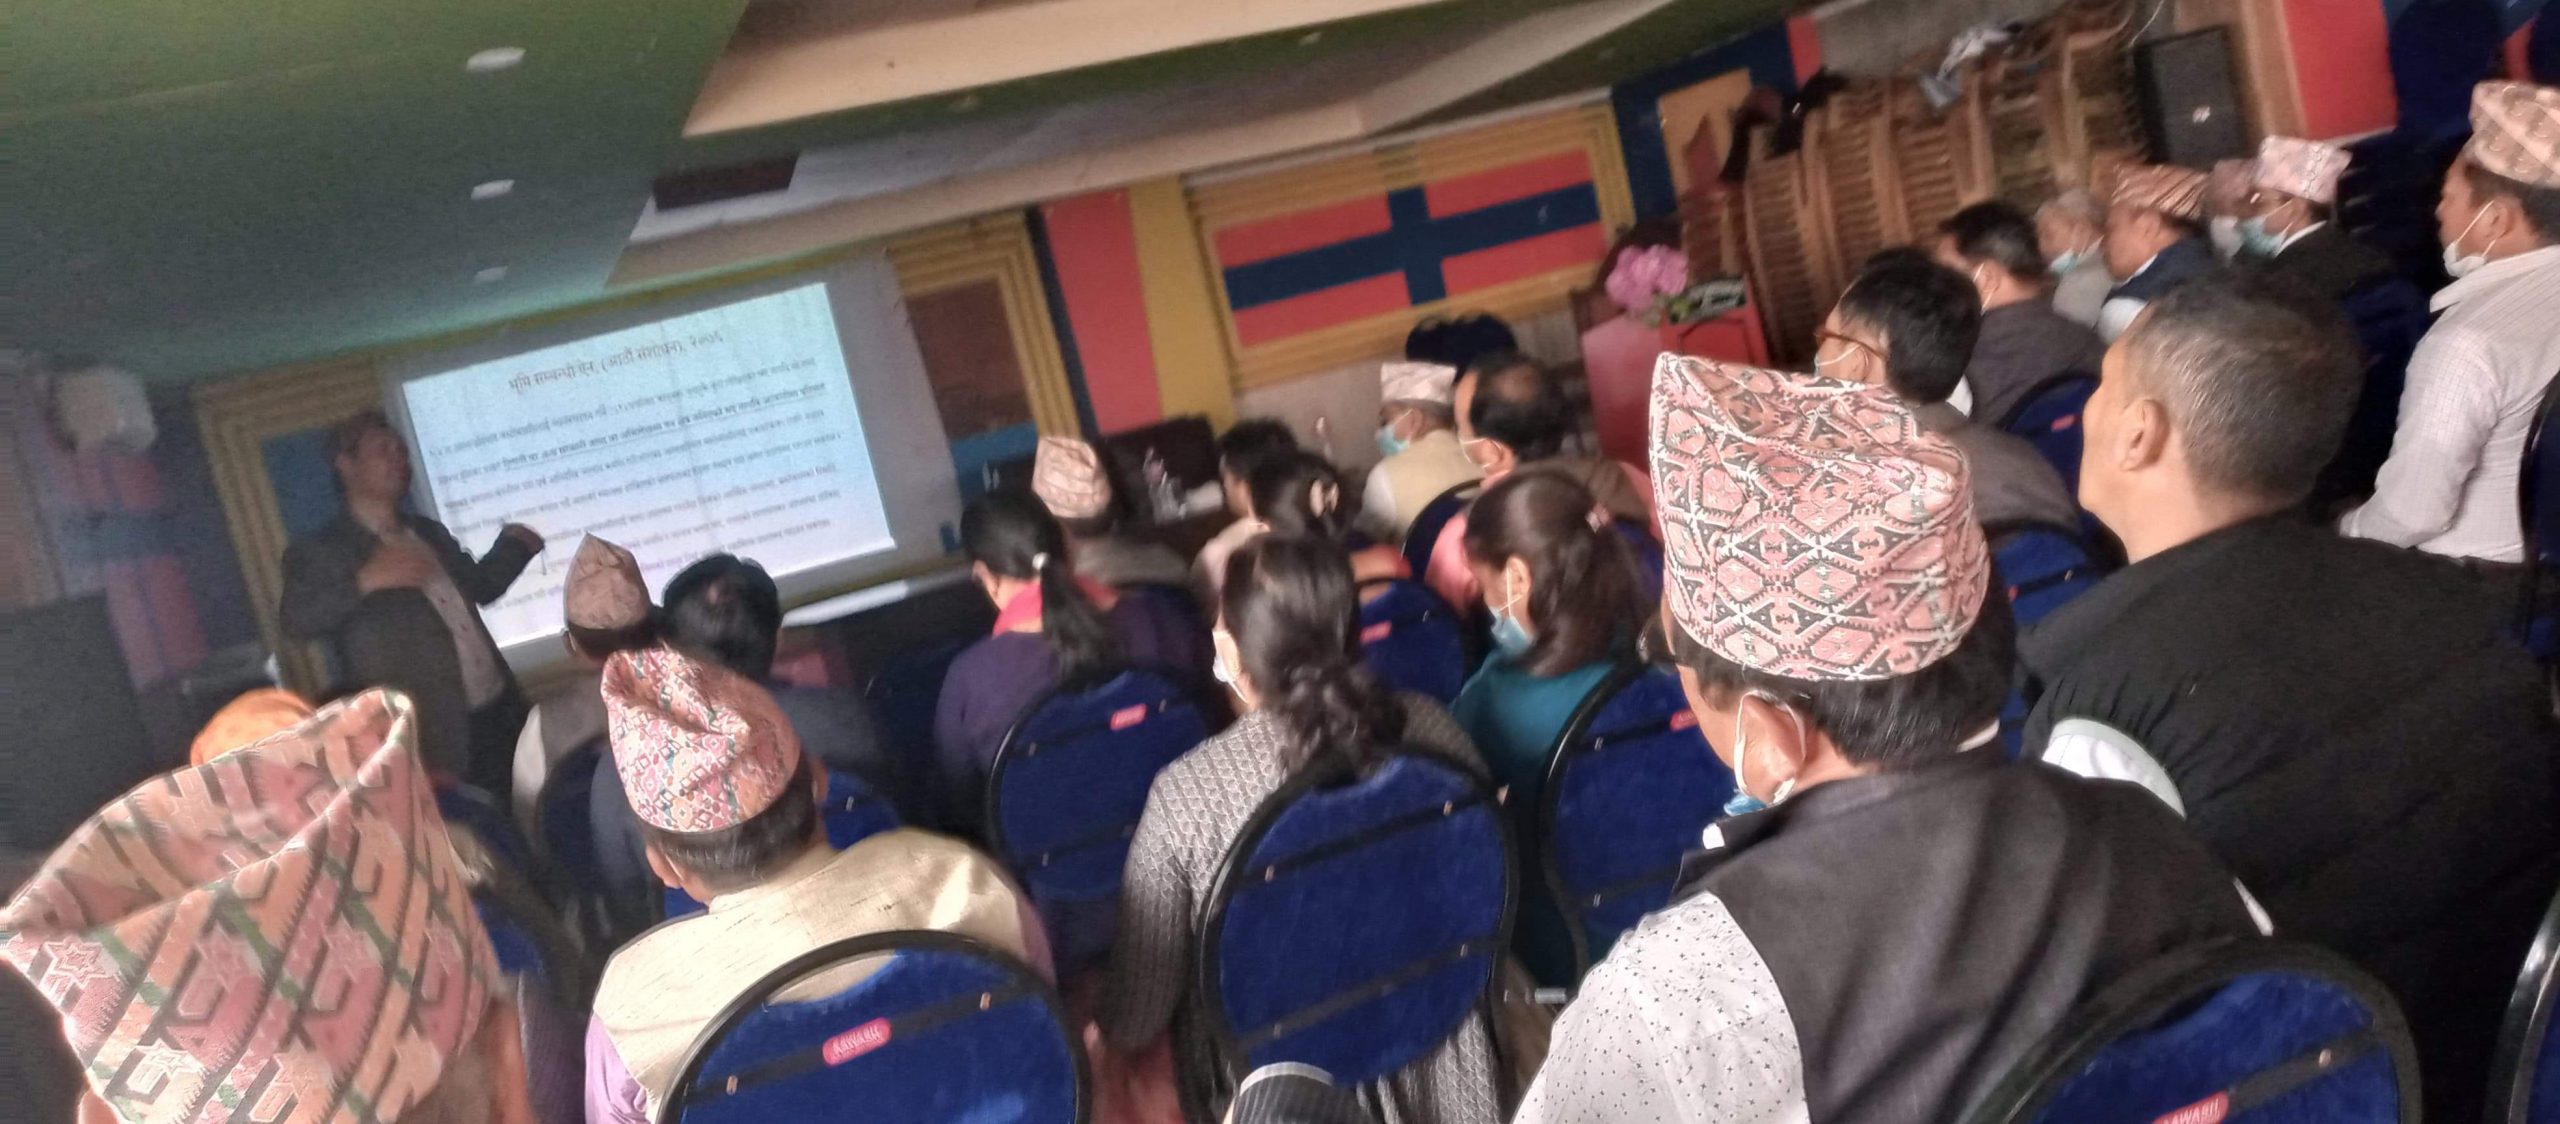 नेपाल सरकार भुमि सम्वन्धी समस्या समाधान आयोगको अभिमुखिकरण गोष्टी रामपुरमा सप्पन्न  सम्पन्न।।